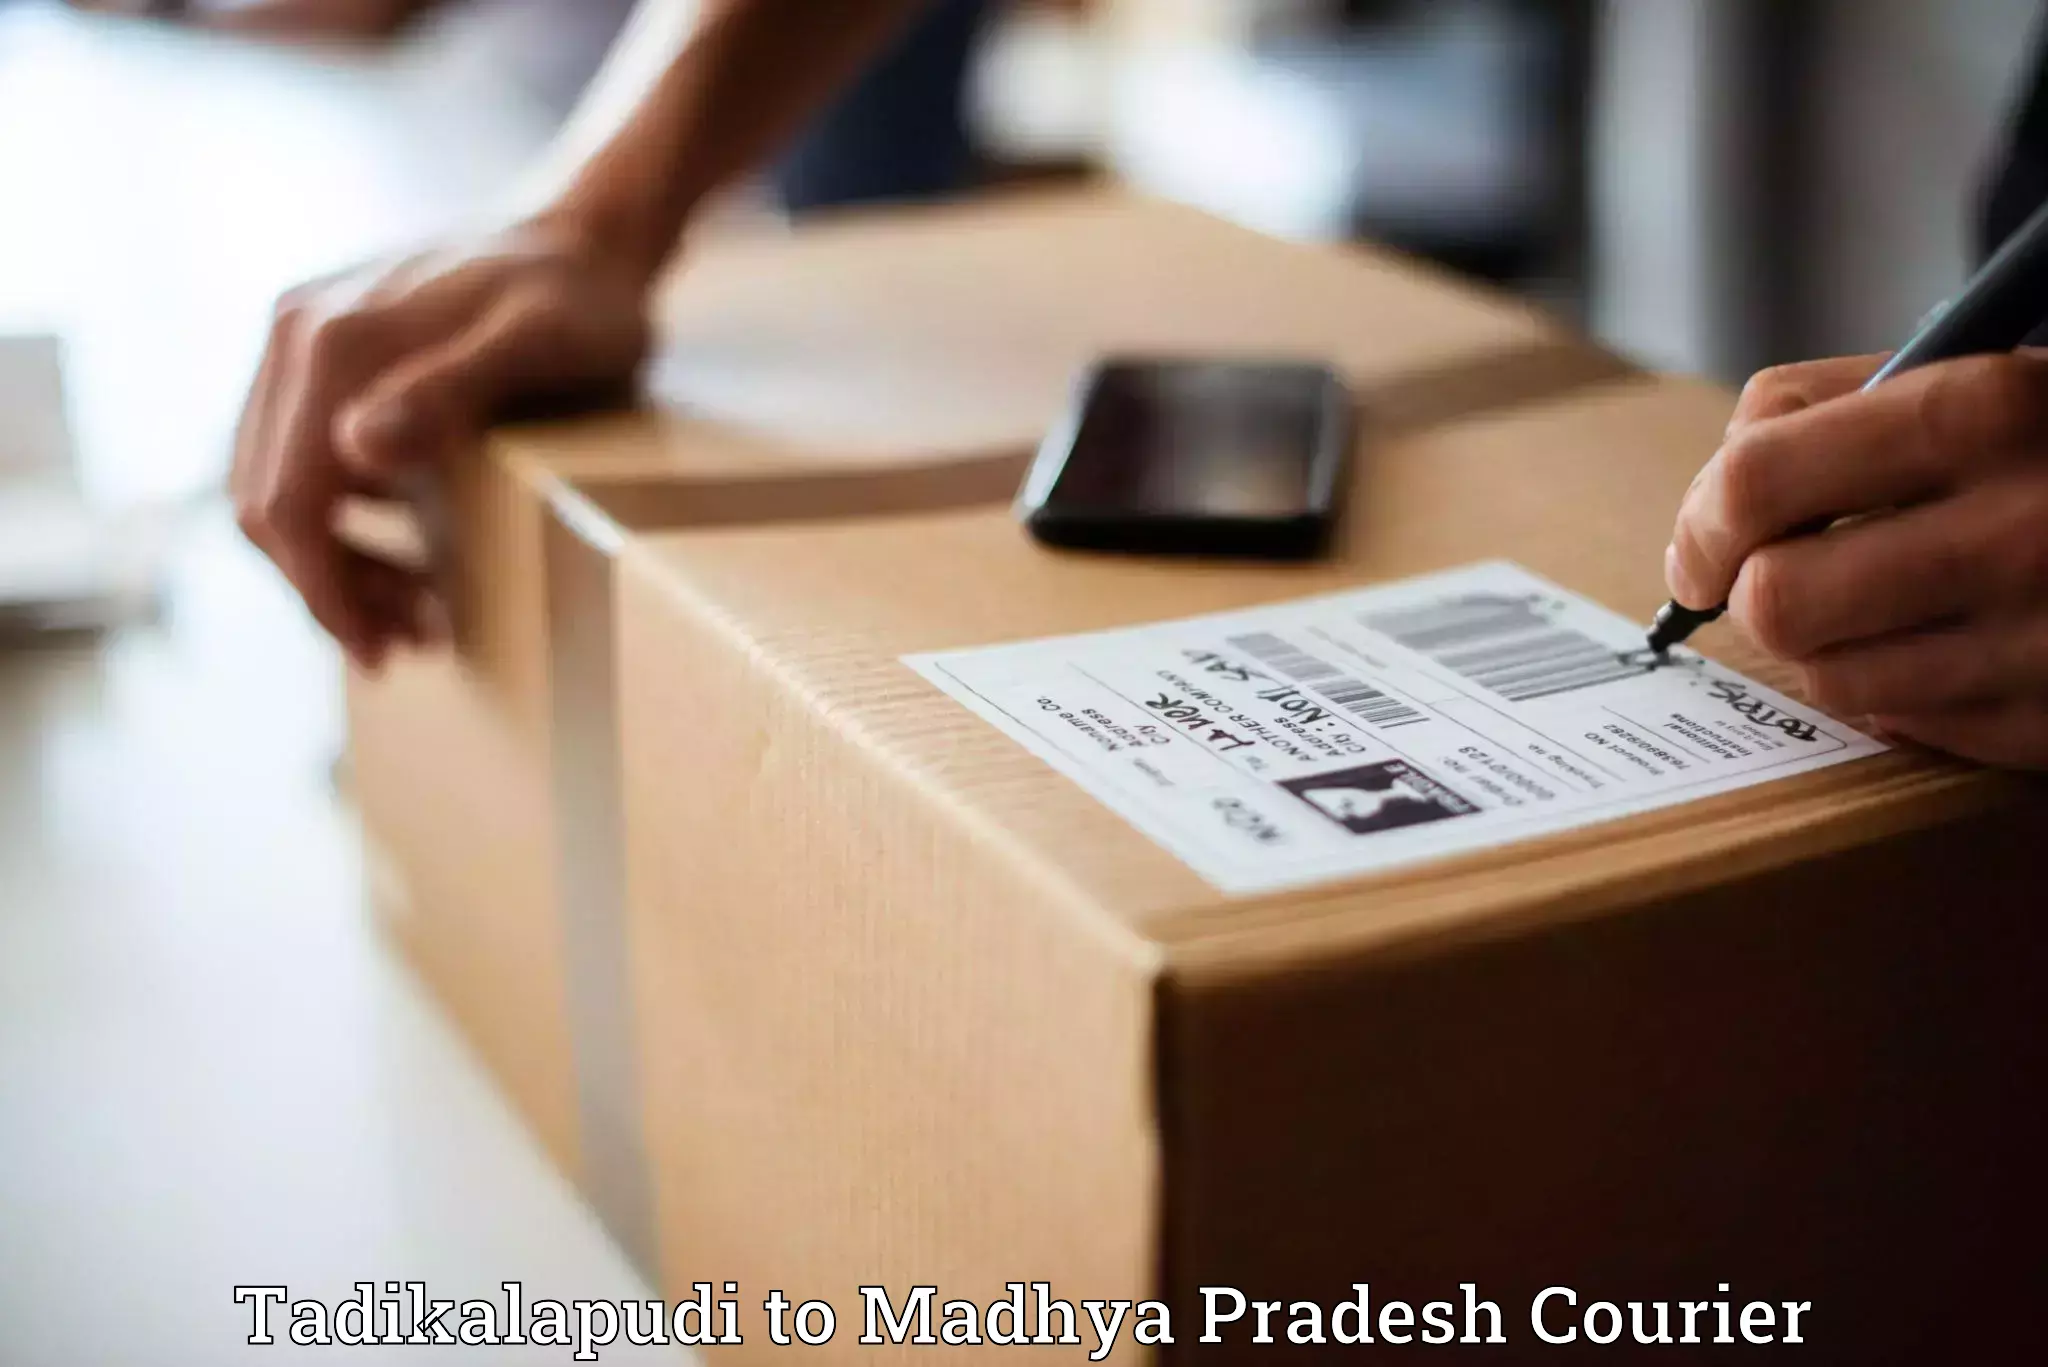 High-speed parcel service Tadikalapudi to Mandideep